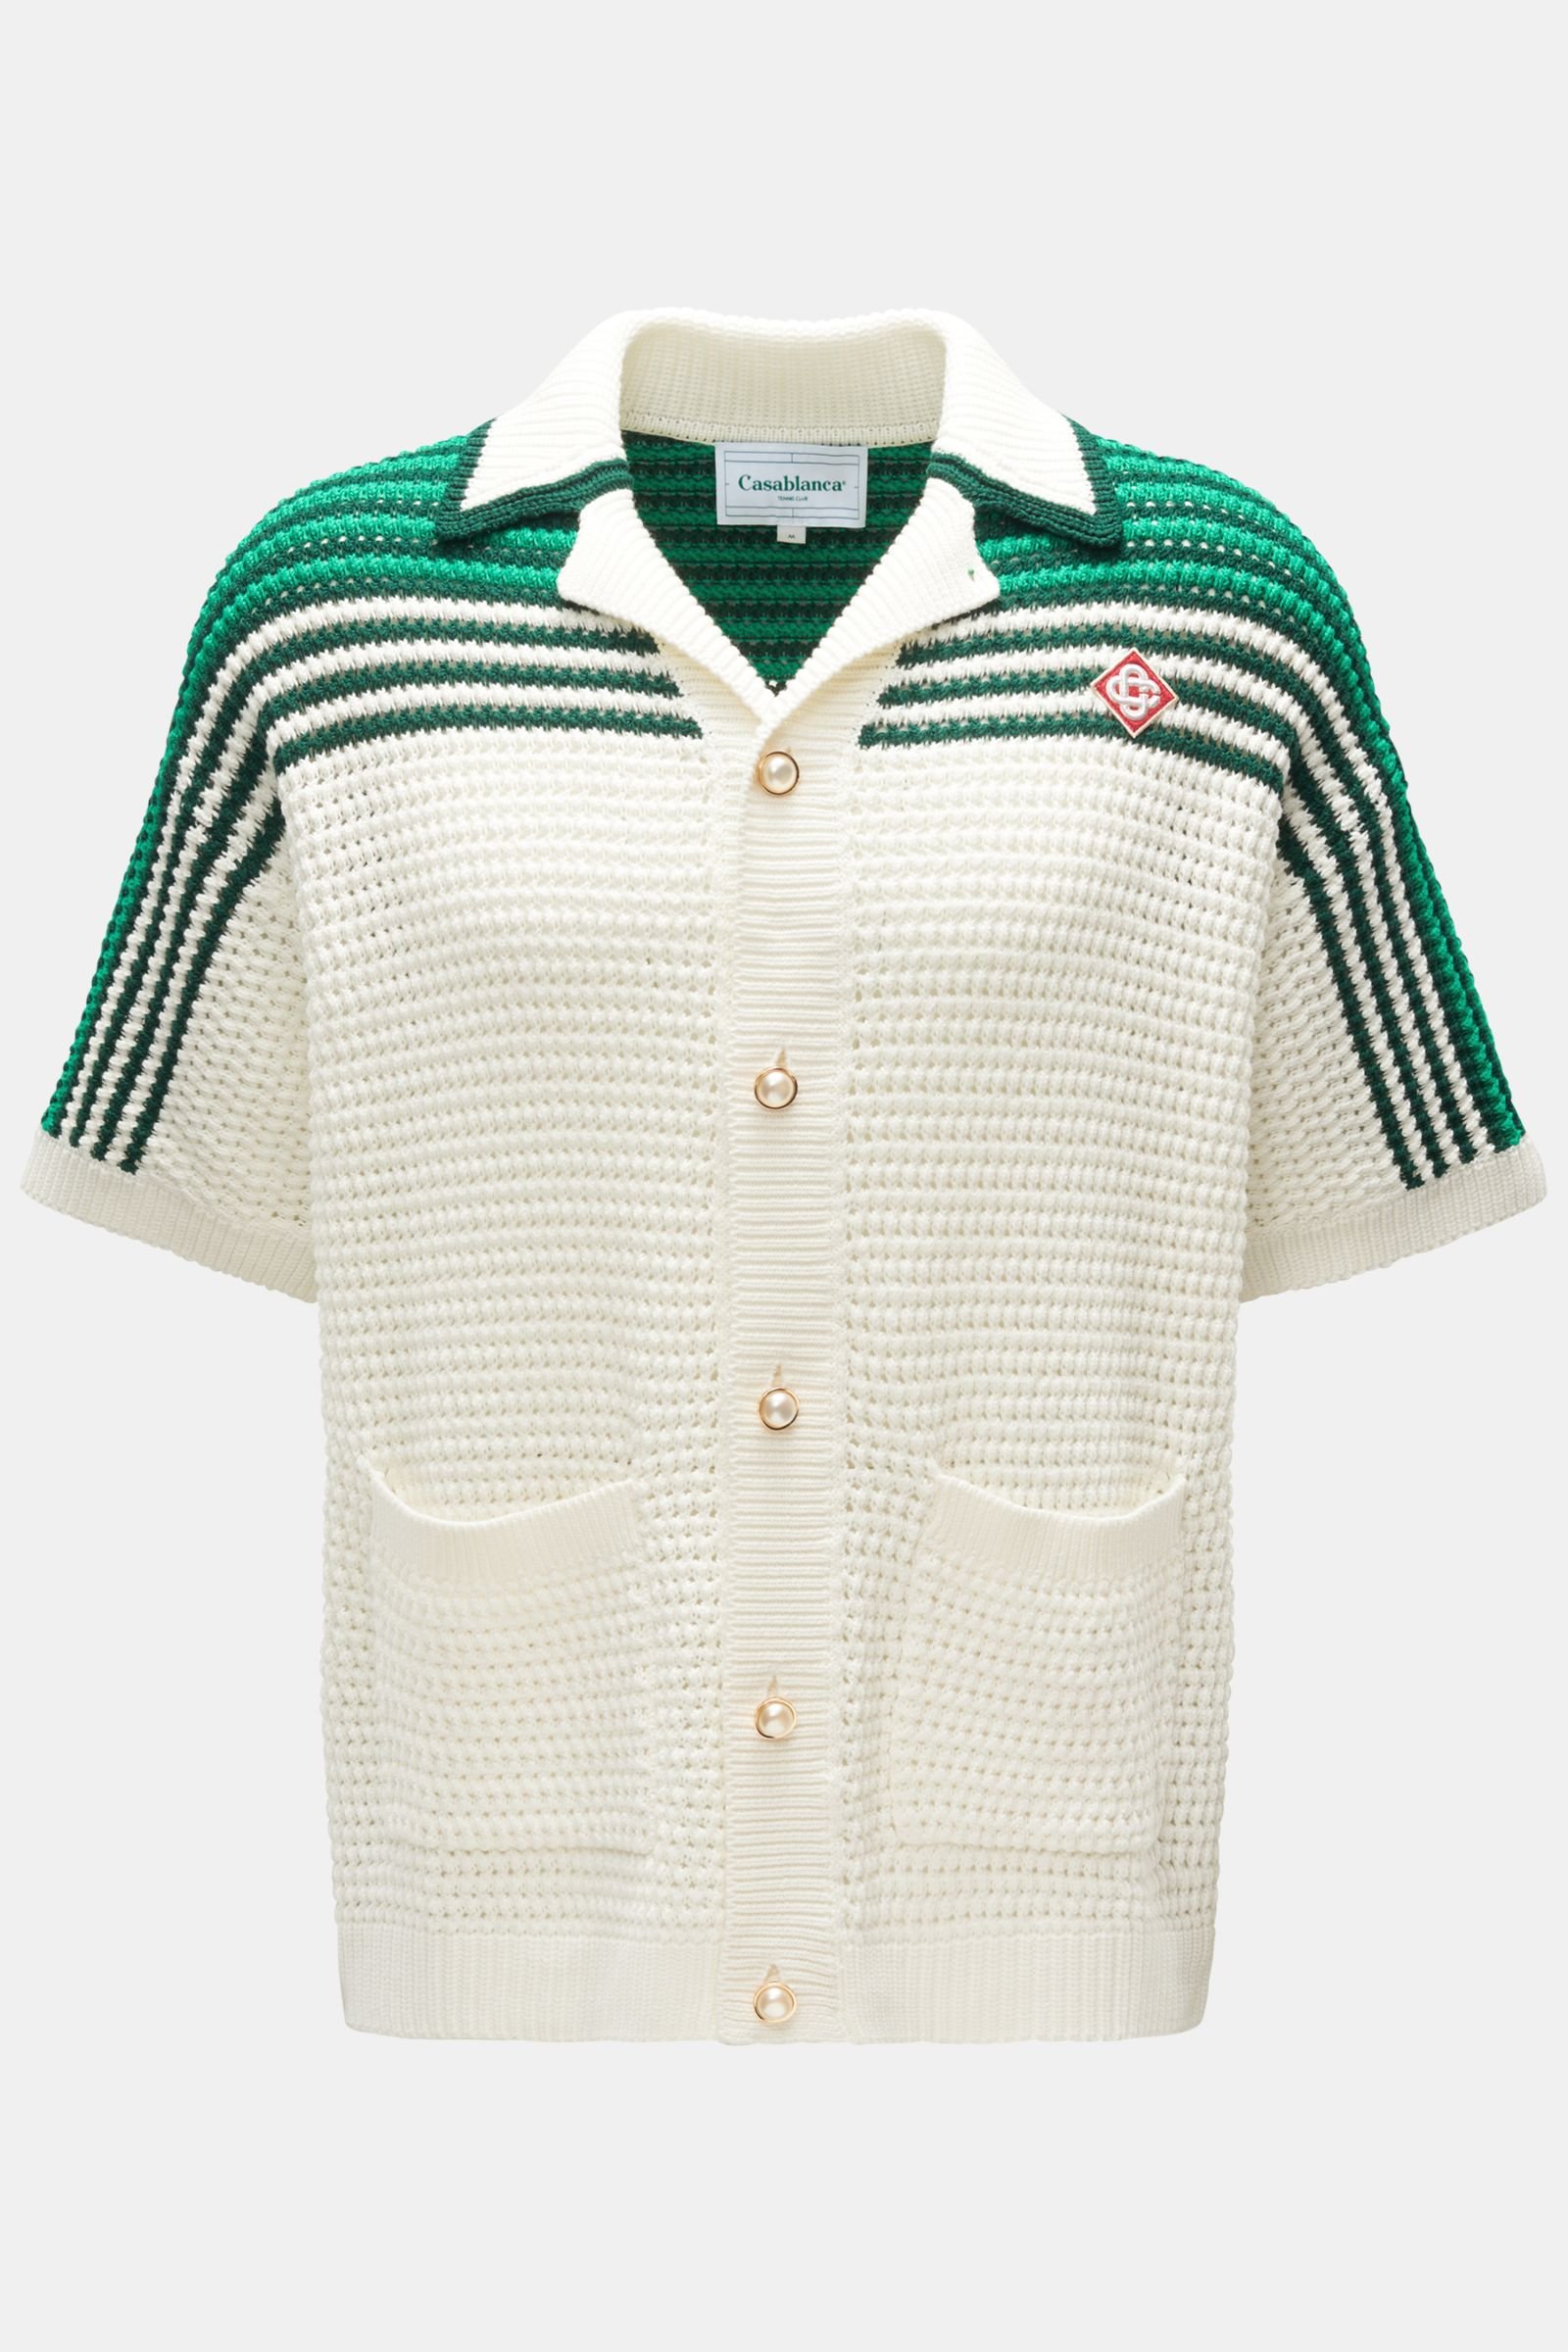 Short sleeve knit shirt 'Tennis Crochet Shirt' Cuban collar green/off-white